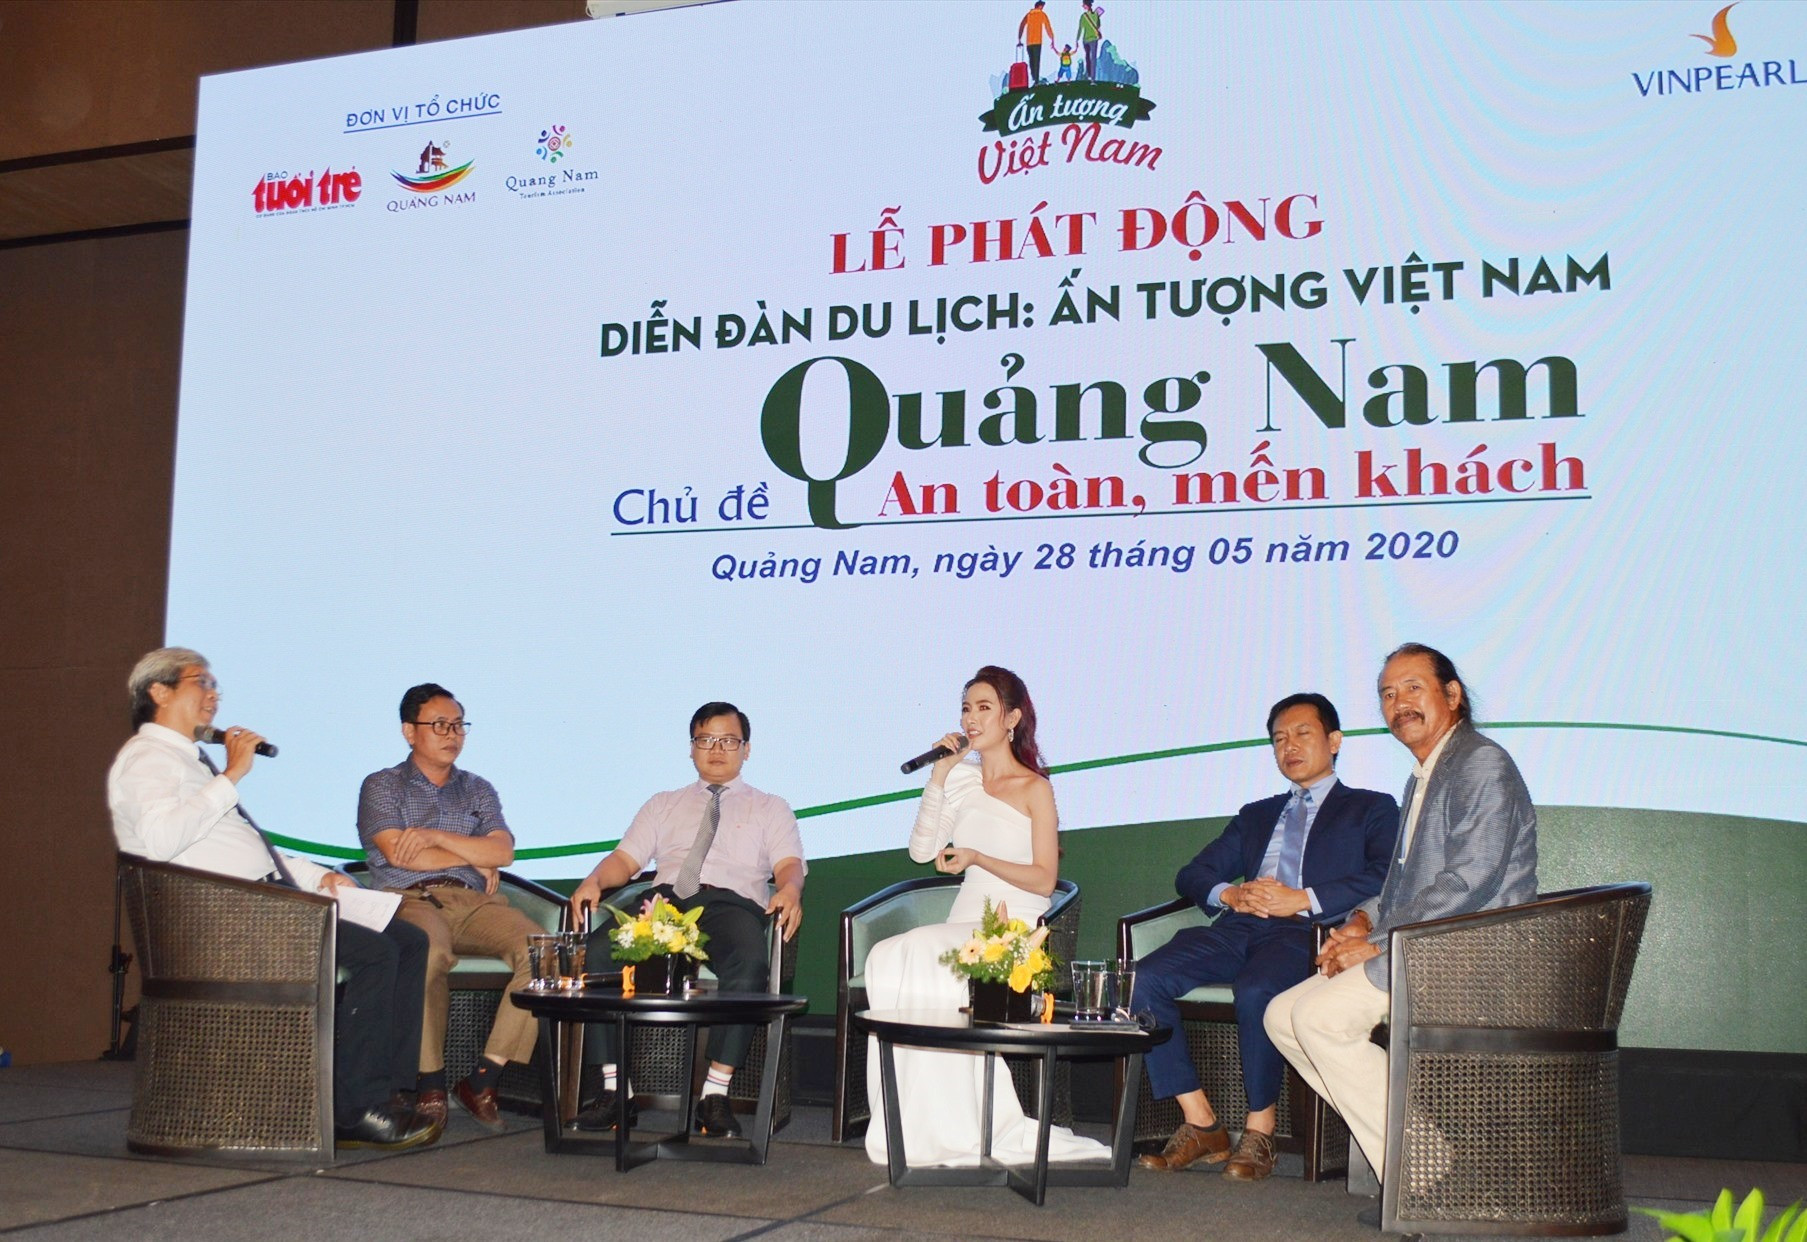 Đồng hành câm kết với sự phát triển du lịch Quảng Nam